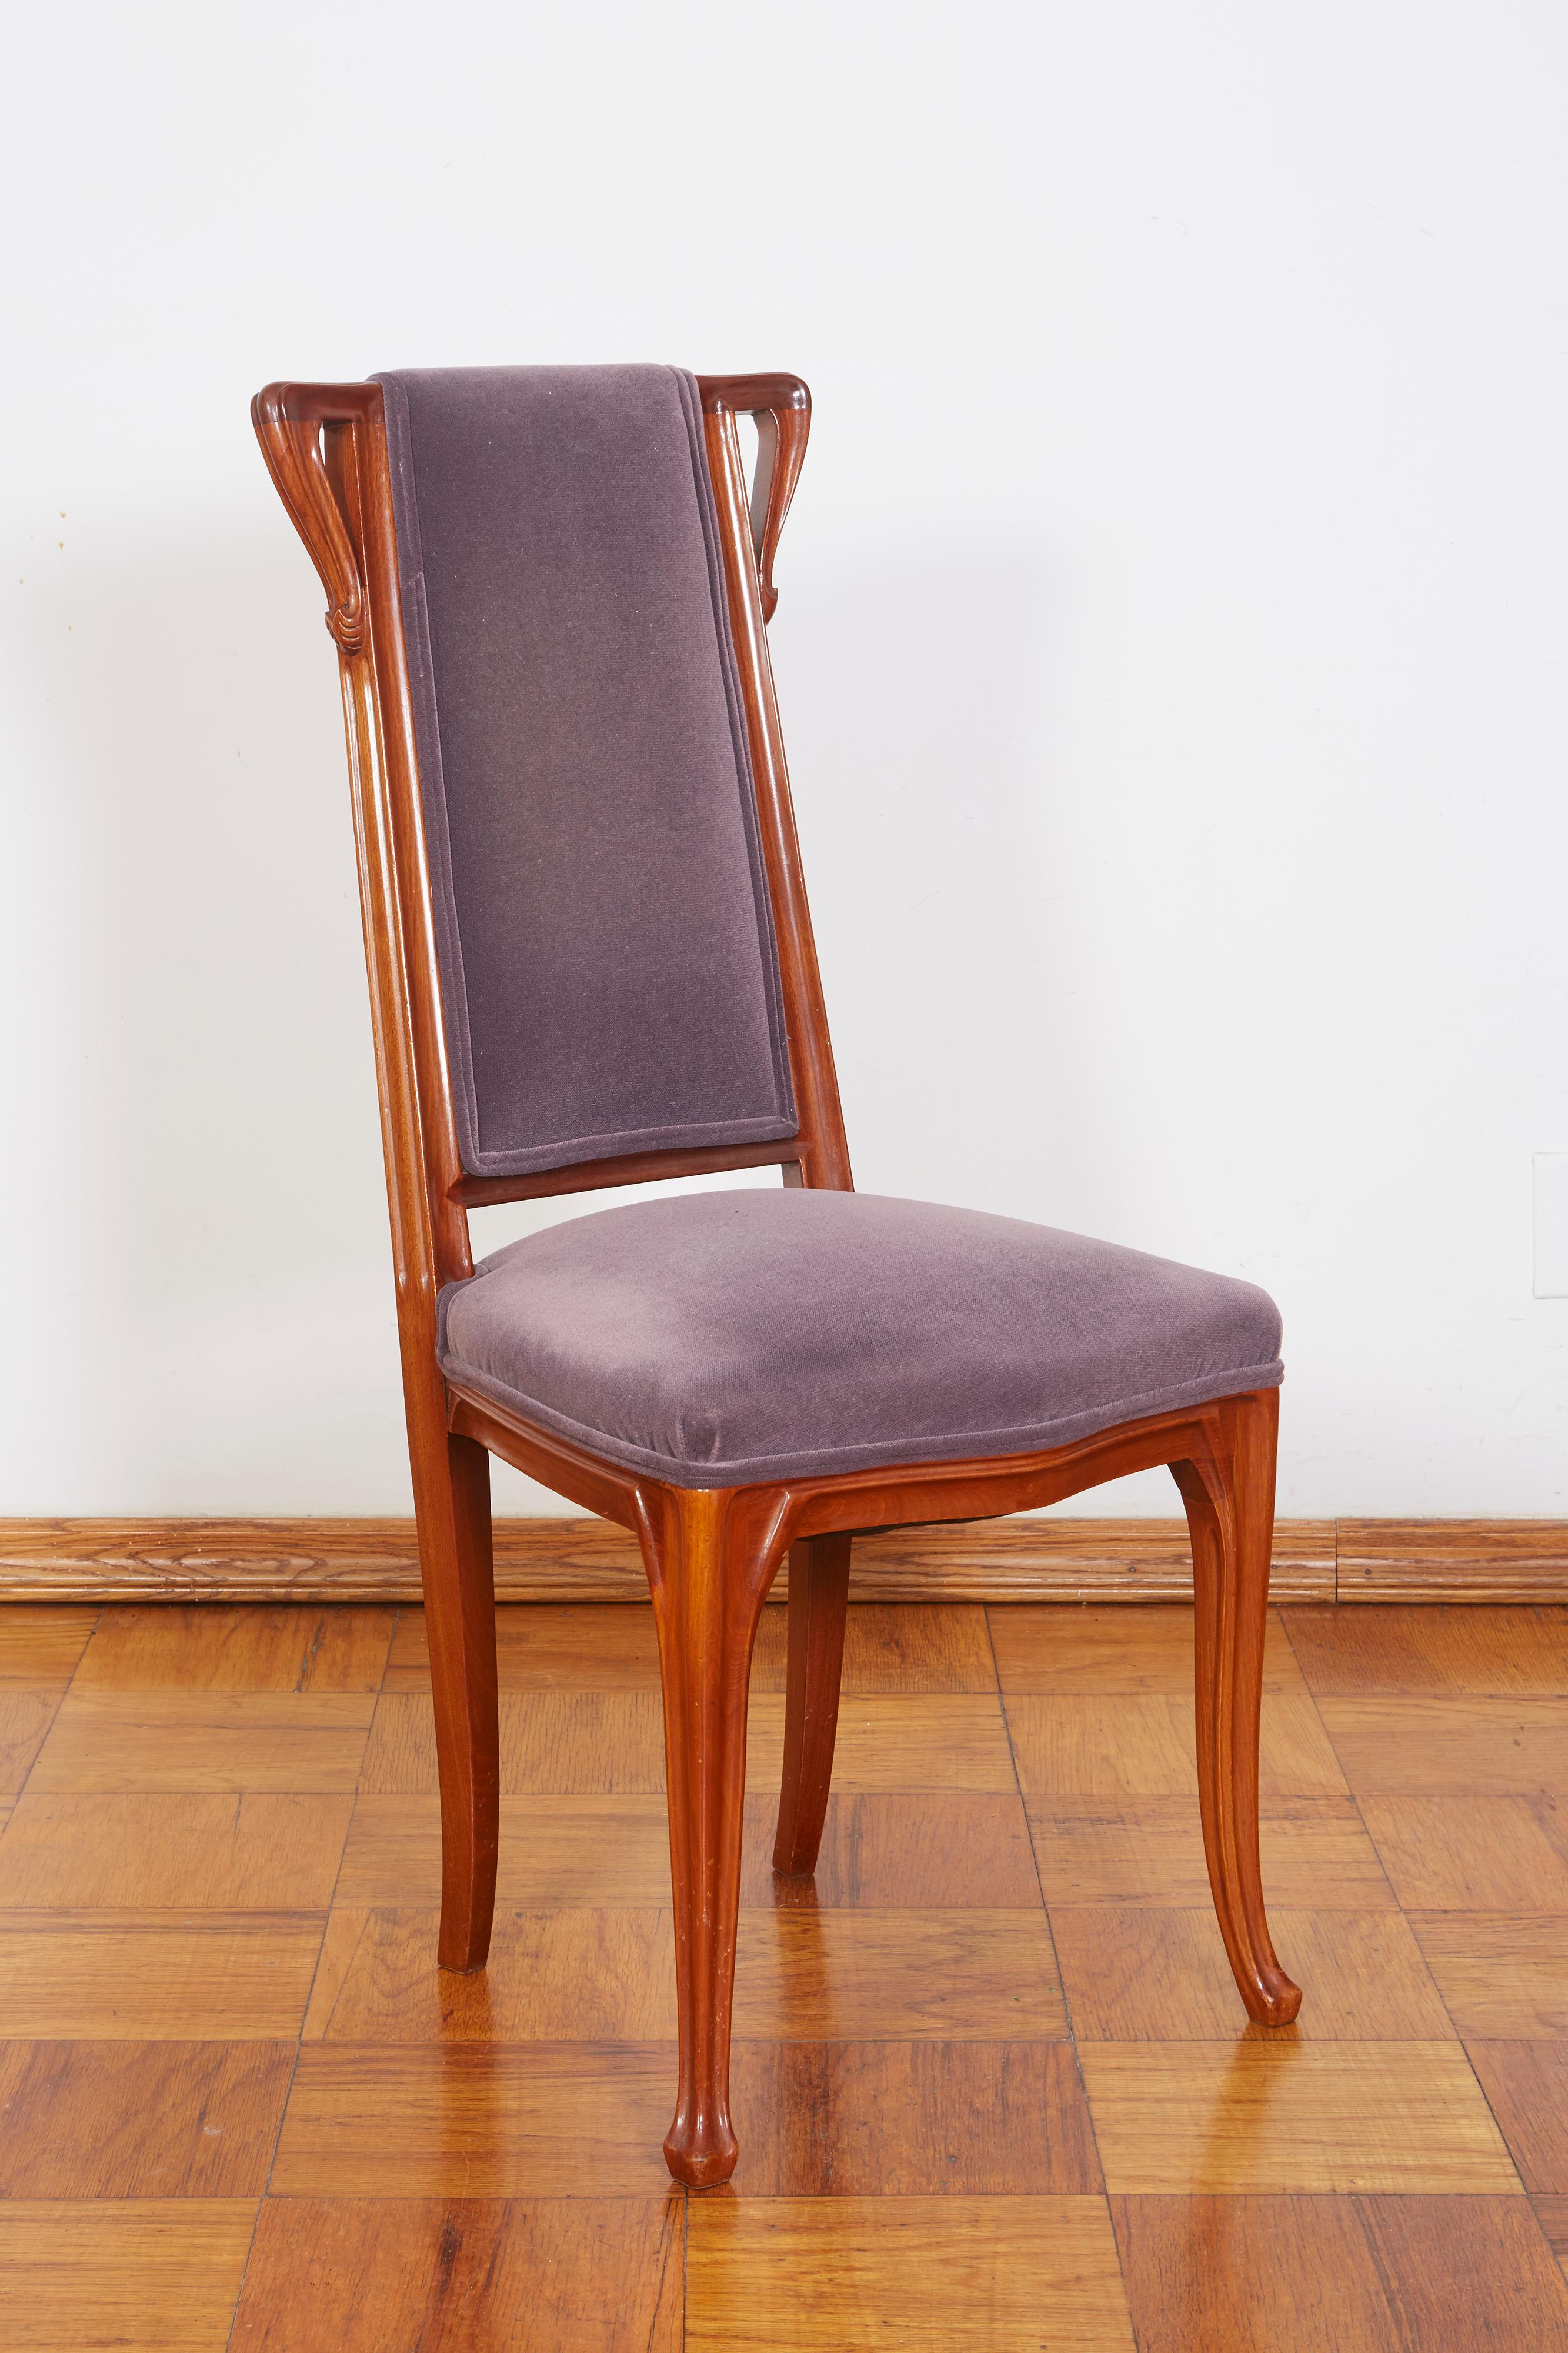 French Art Nouveau pair of Louis Majorelle chairs
Measures: Width: 17